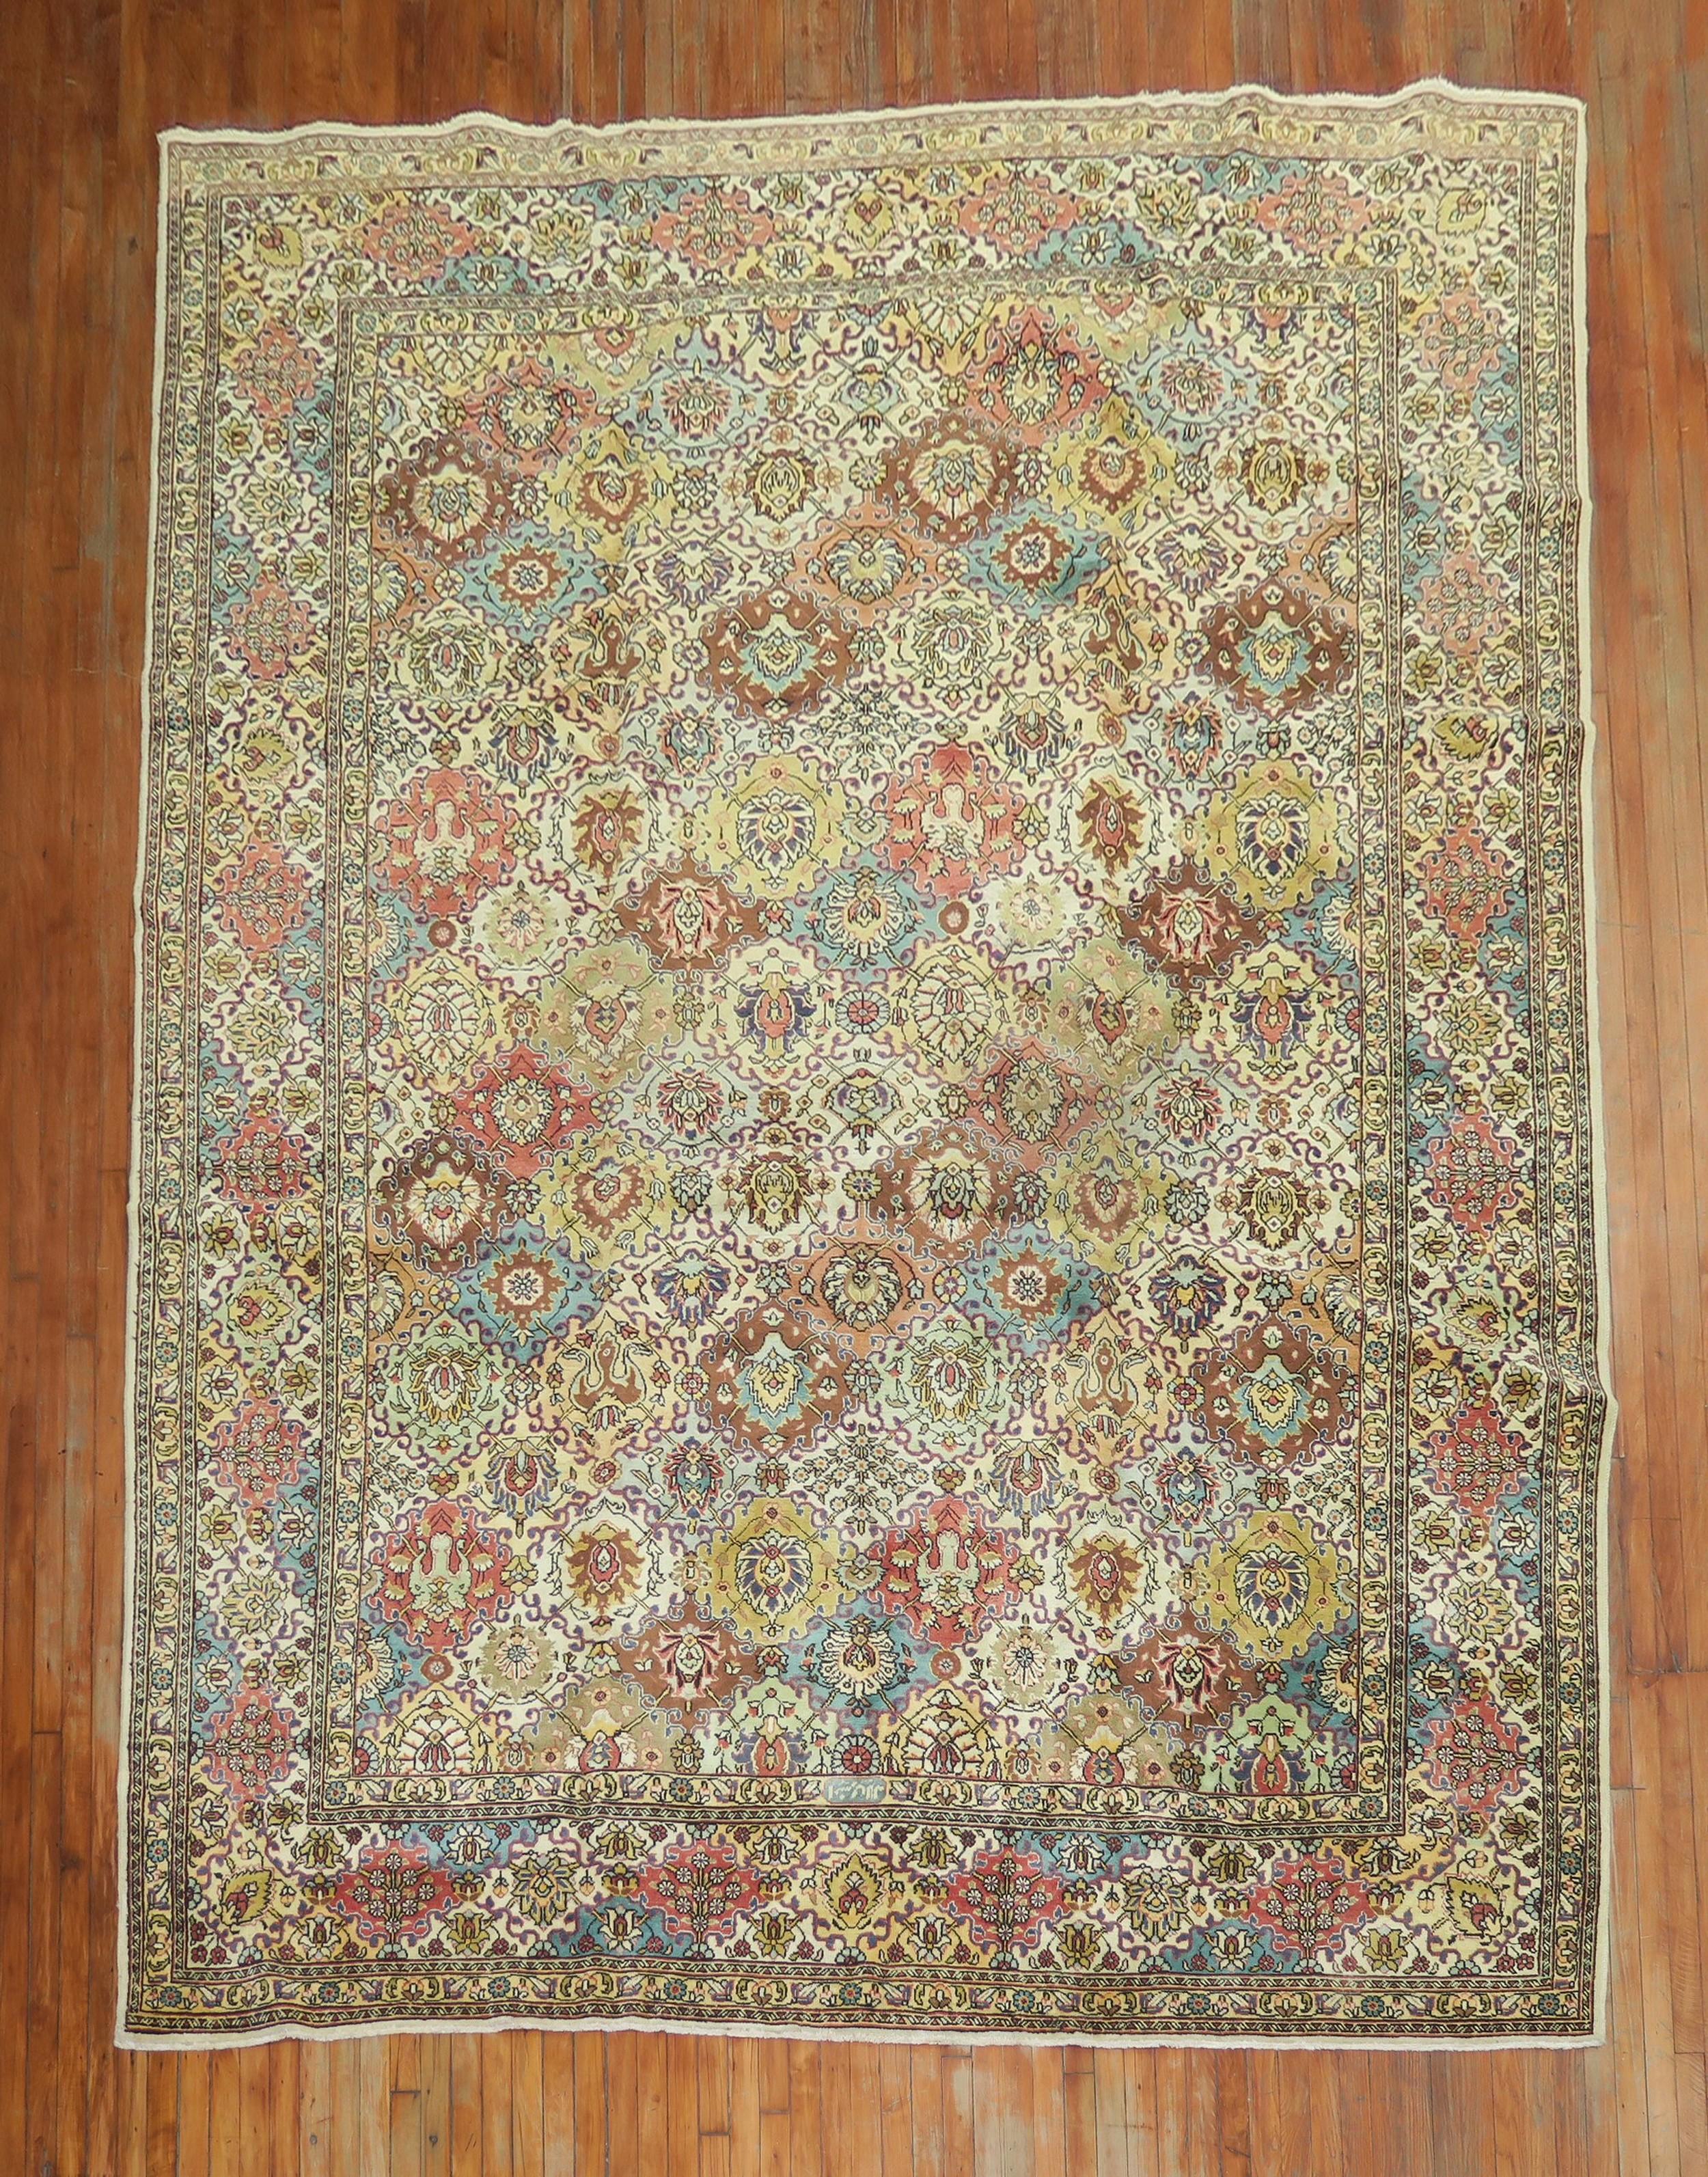 Ein persischer Täbriz-Teppich mit Allover-Muster aus der Mitte des 20. Jahrhunderts mit einer Vielzahl von Farben auf einem cremegelben Feld.

Maße: 9'6'' x 13'.